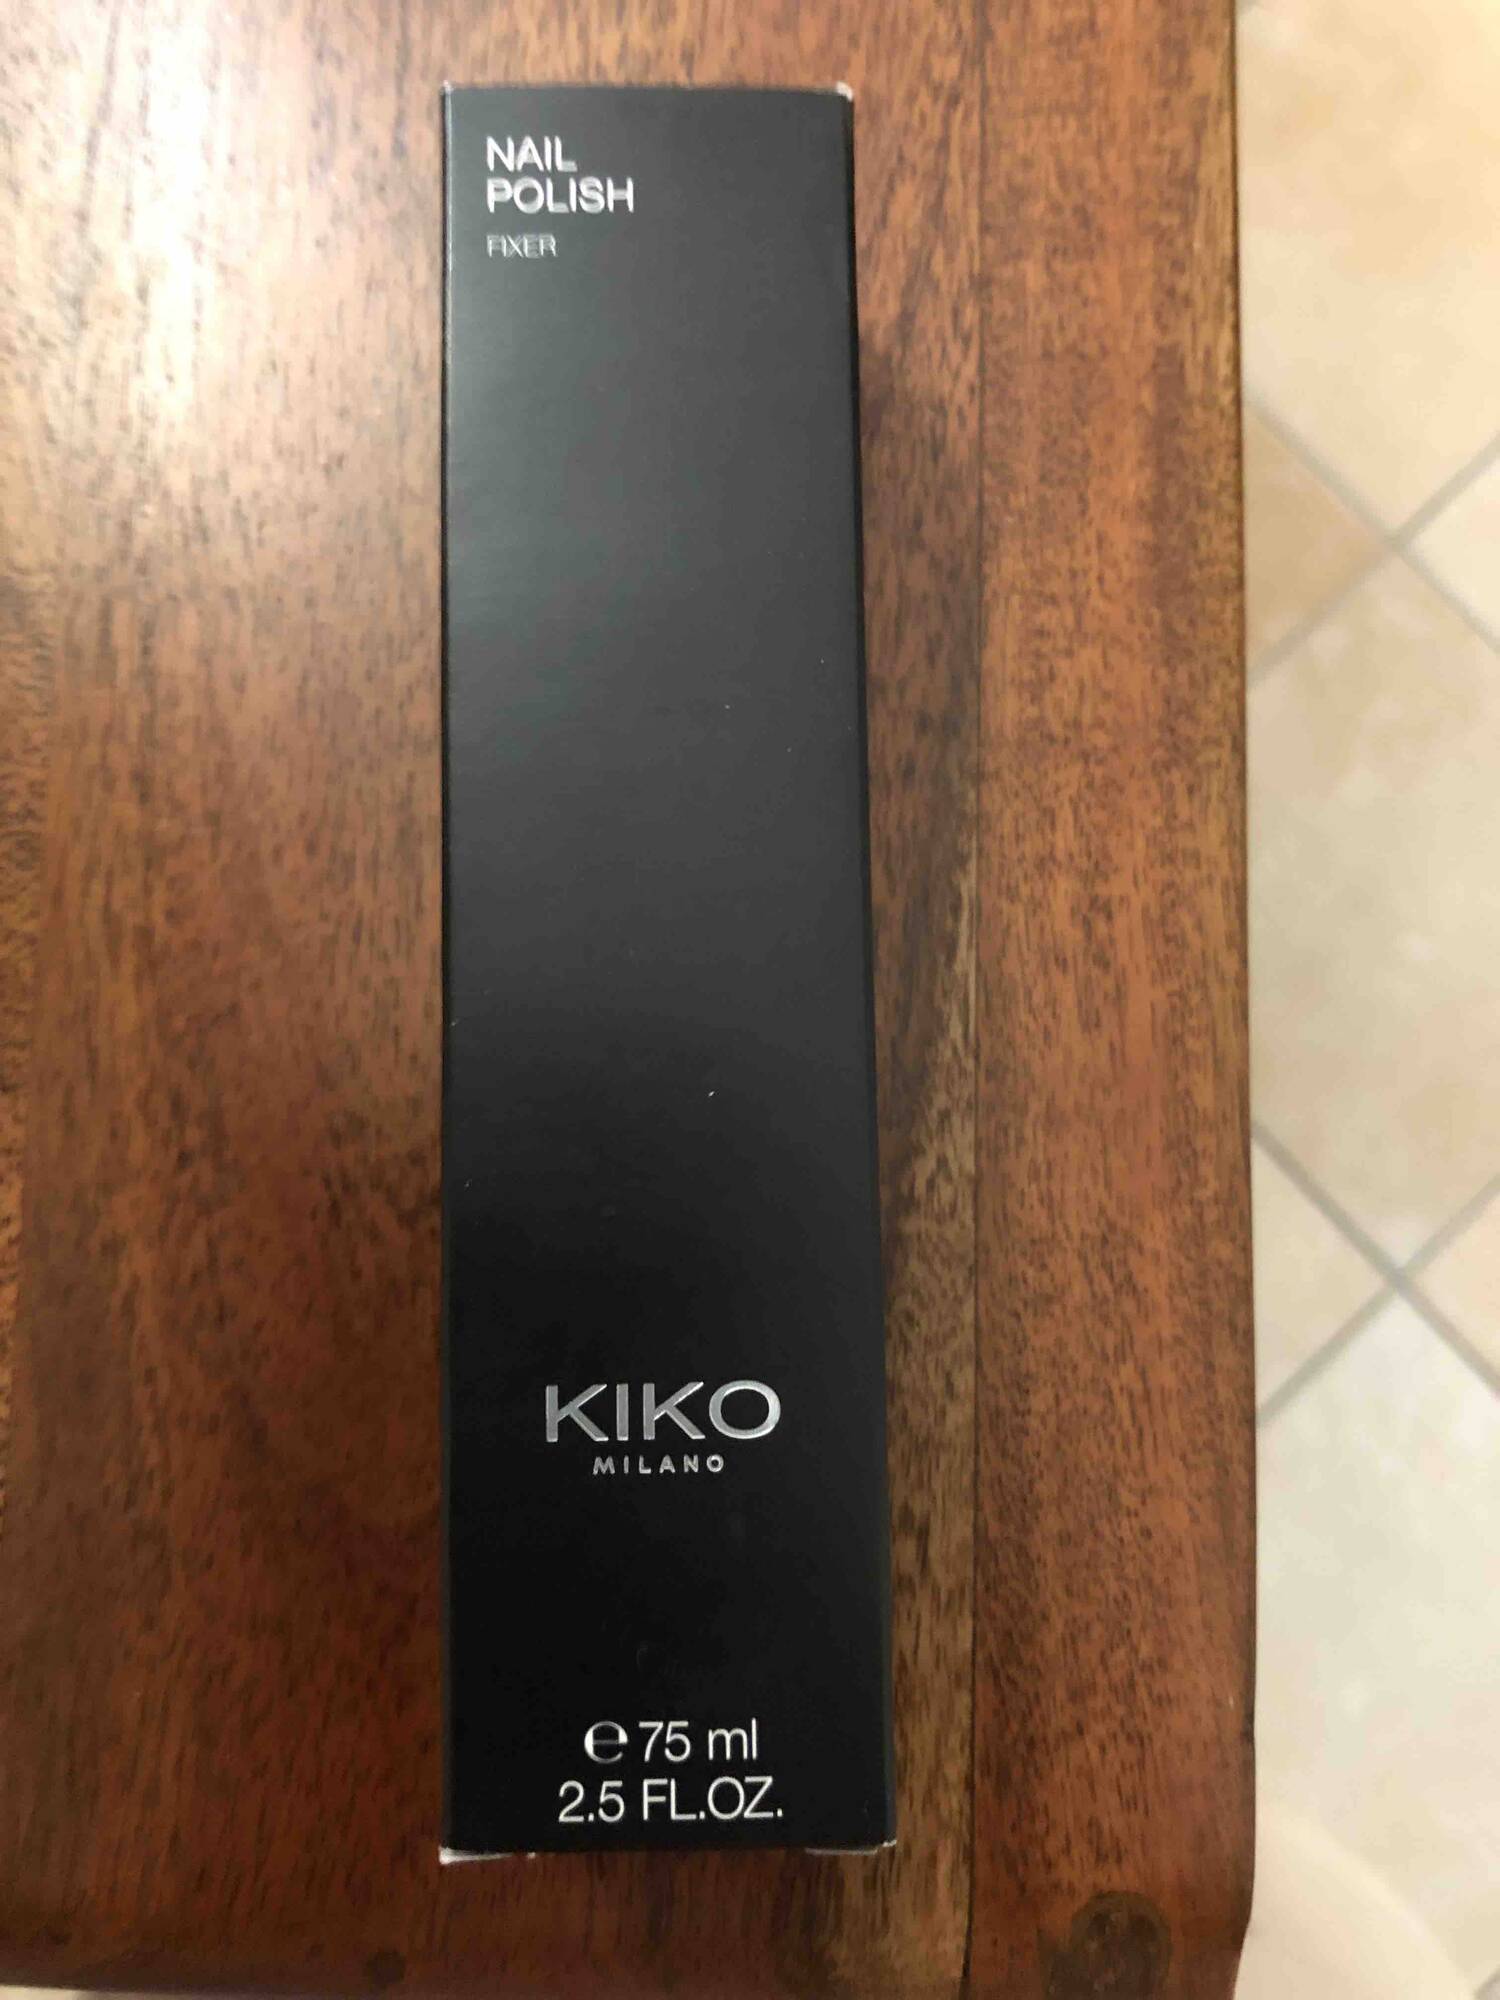 KIKO - Nail polish fixer